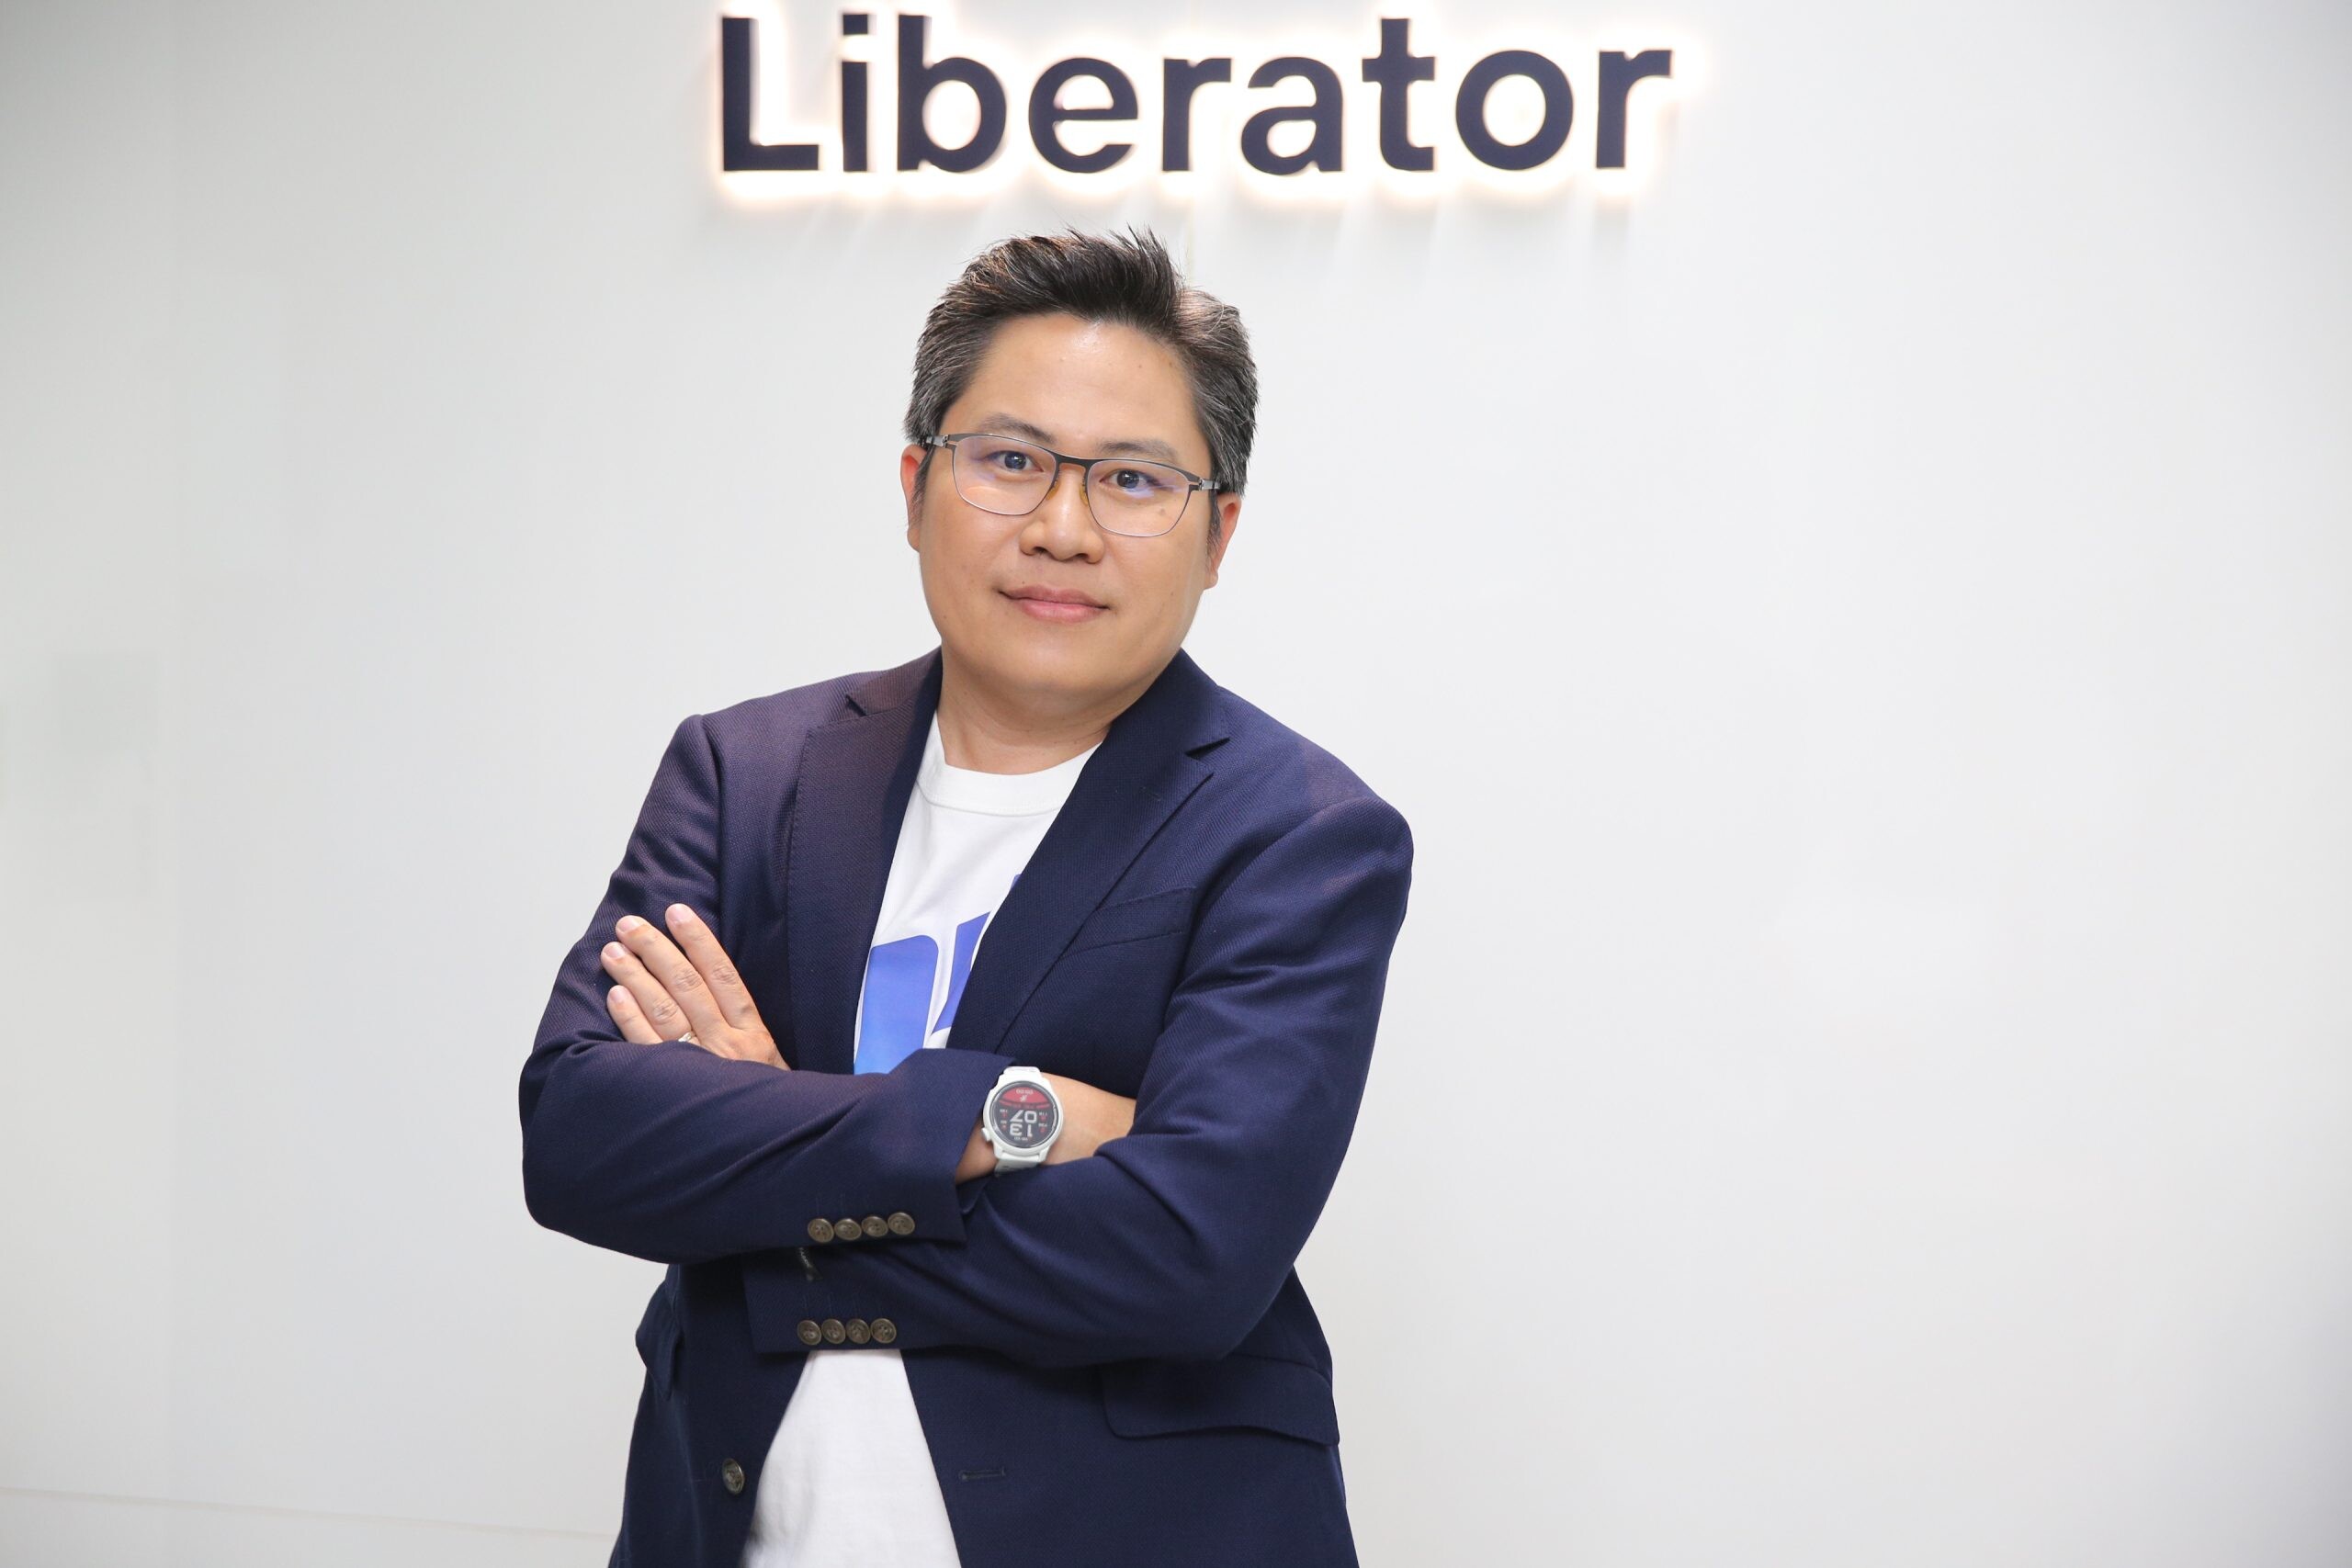 บล.ลิเบอเรเตอร์ เปิดตัวทีมวิเคราะห์หลักทรัพย์ นำทัพโดย "จรูญพันธ์ วัฒนพันธ์" พร้อมปูทางสู่ Liberator Academy เริ่มโปรเจกต์แรกกับ "LIB Talks" 15 พ.ค.นี้!